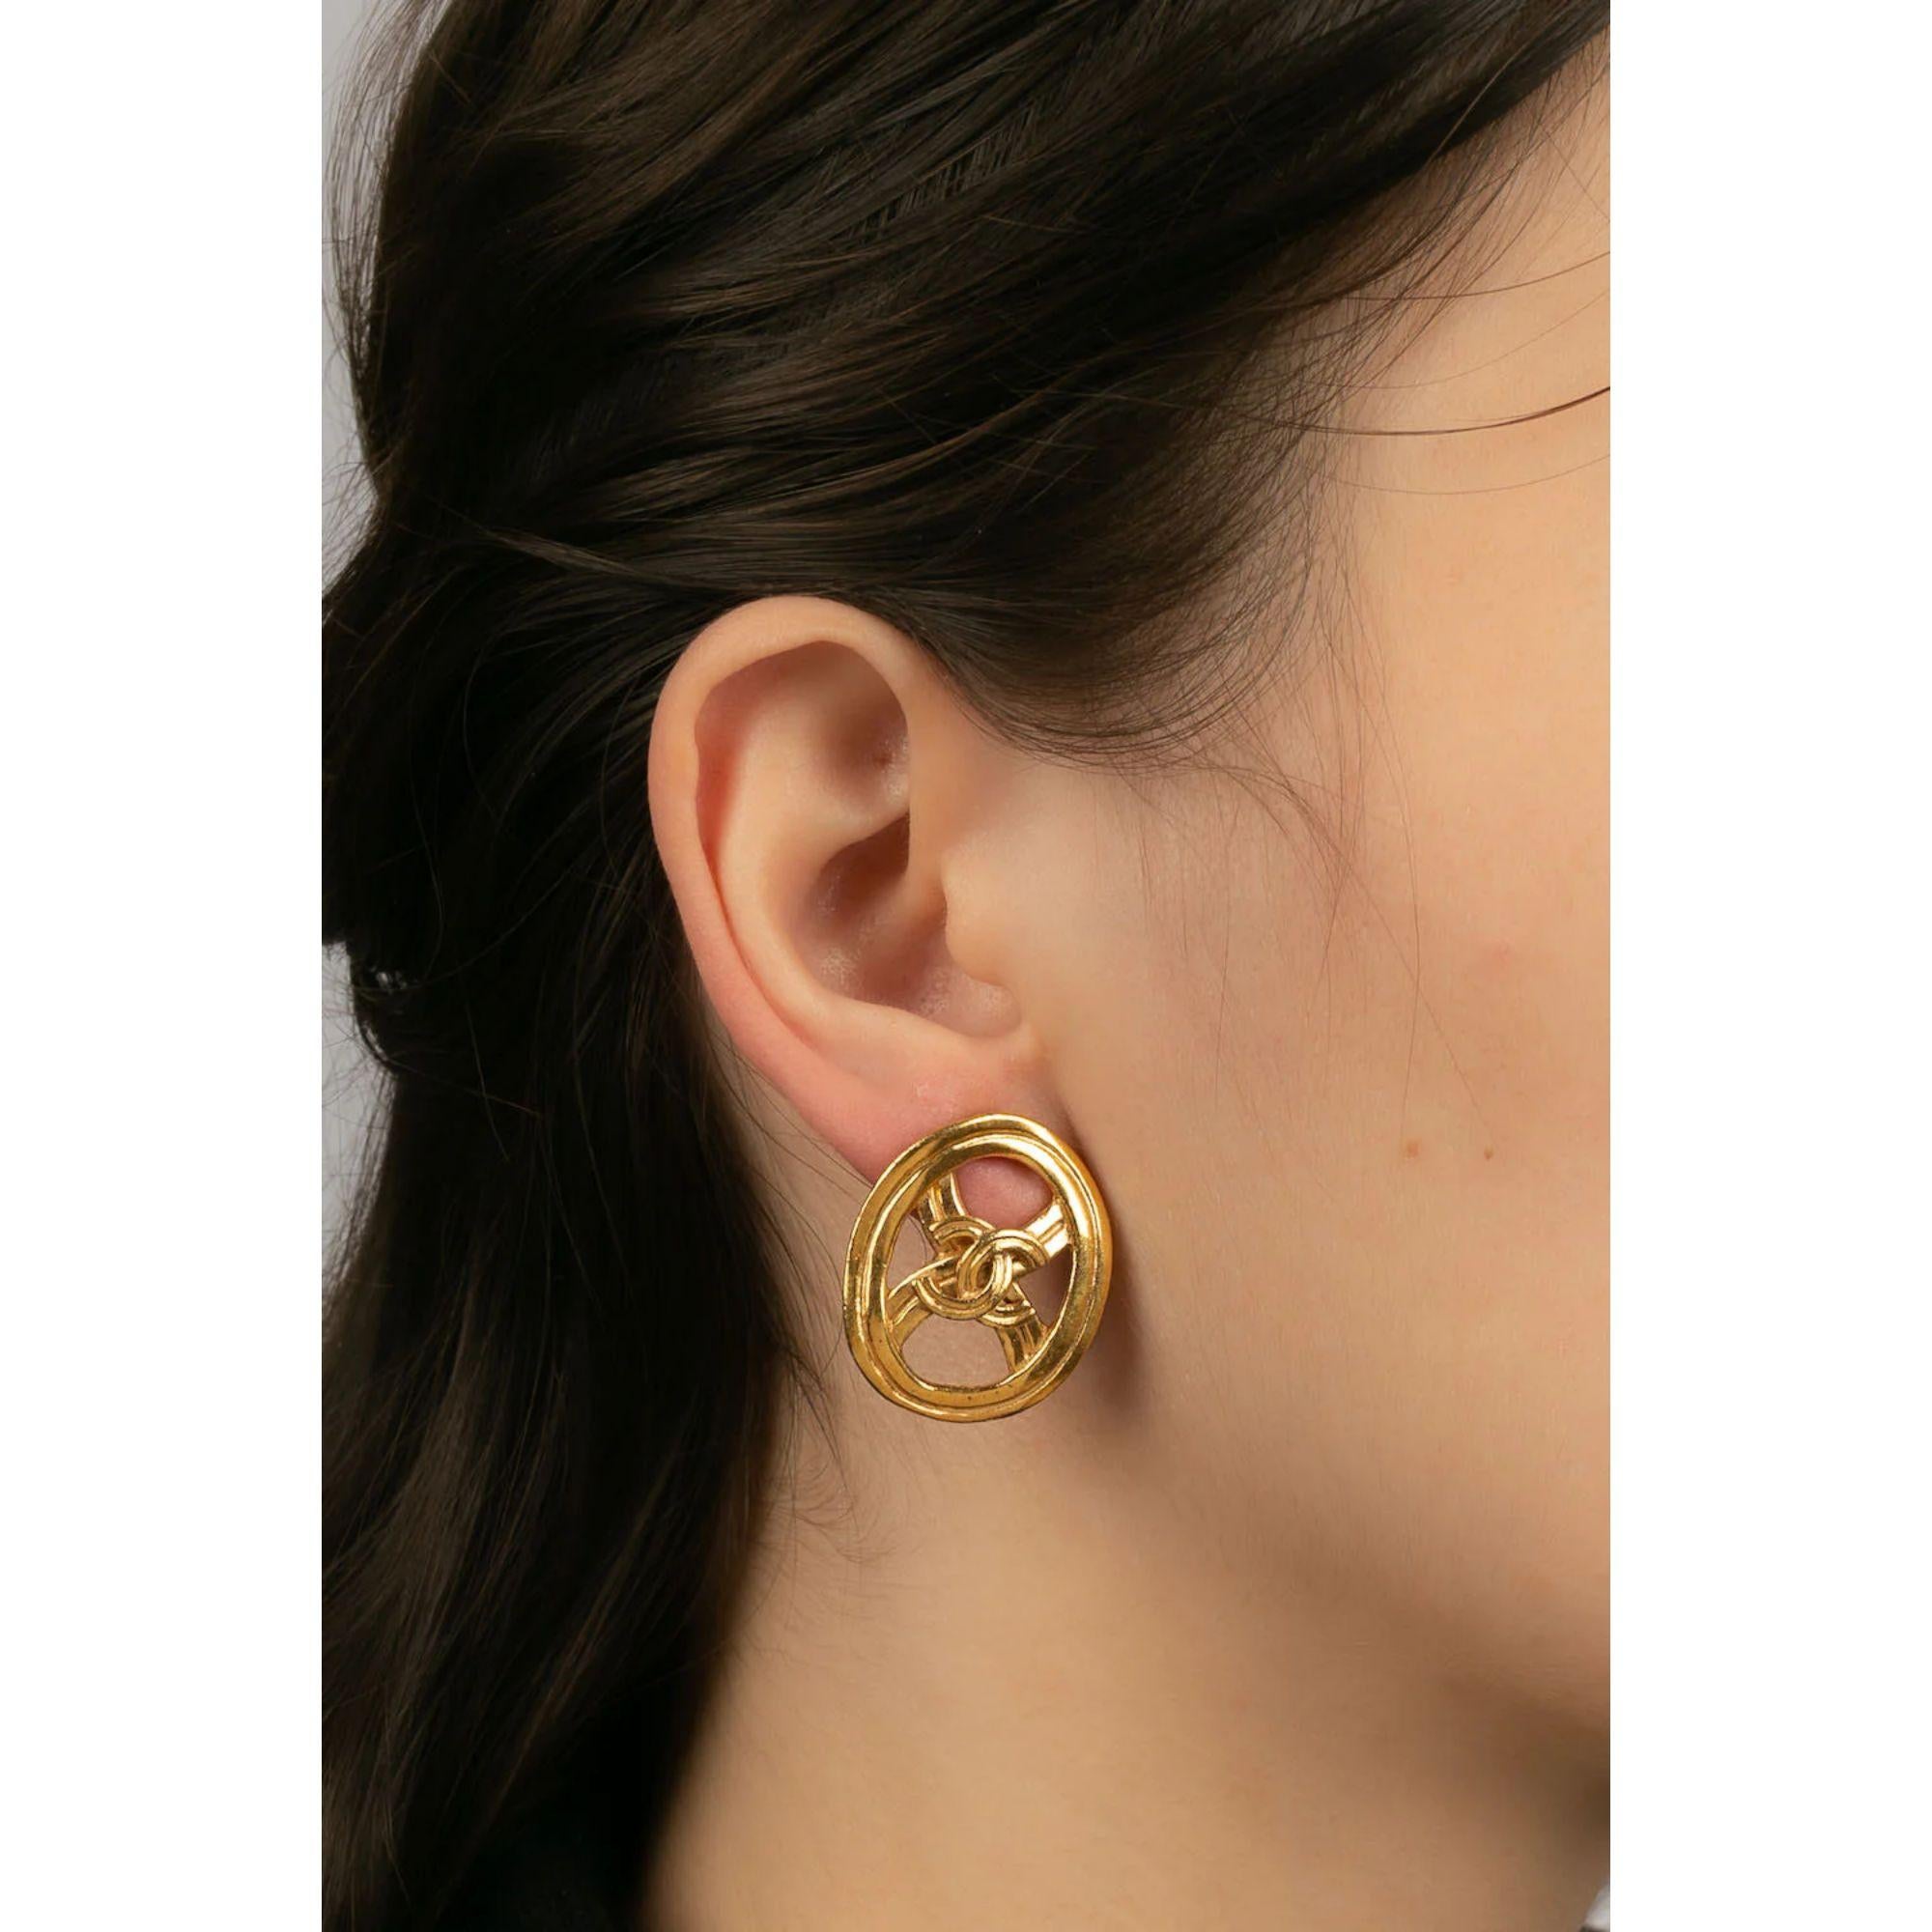 Chanel - (Made in France) Ohrringe Clips in Goldmetall. Kollektion Frühjahr-Sommer 1996.

Zusätzliche Informationen:

Abmessungen: 3 H cm

Zustand: Sehr guter Zustand

Verkäufer Ref Nummer: BOB198